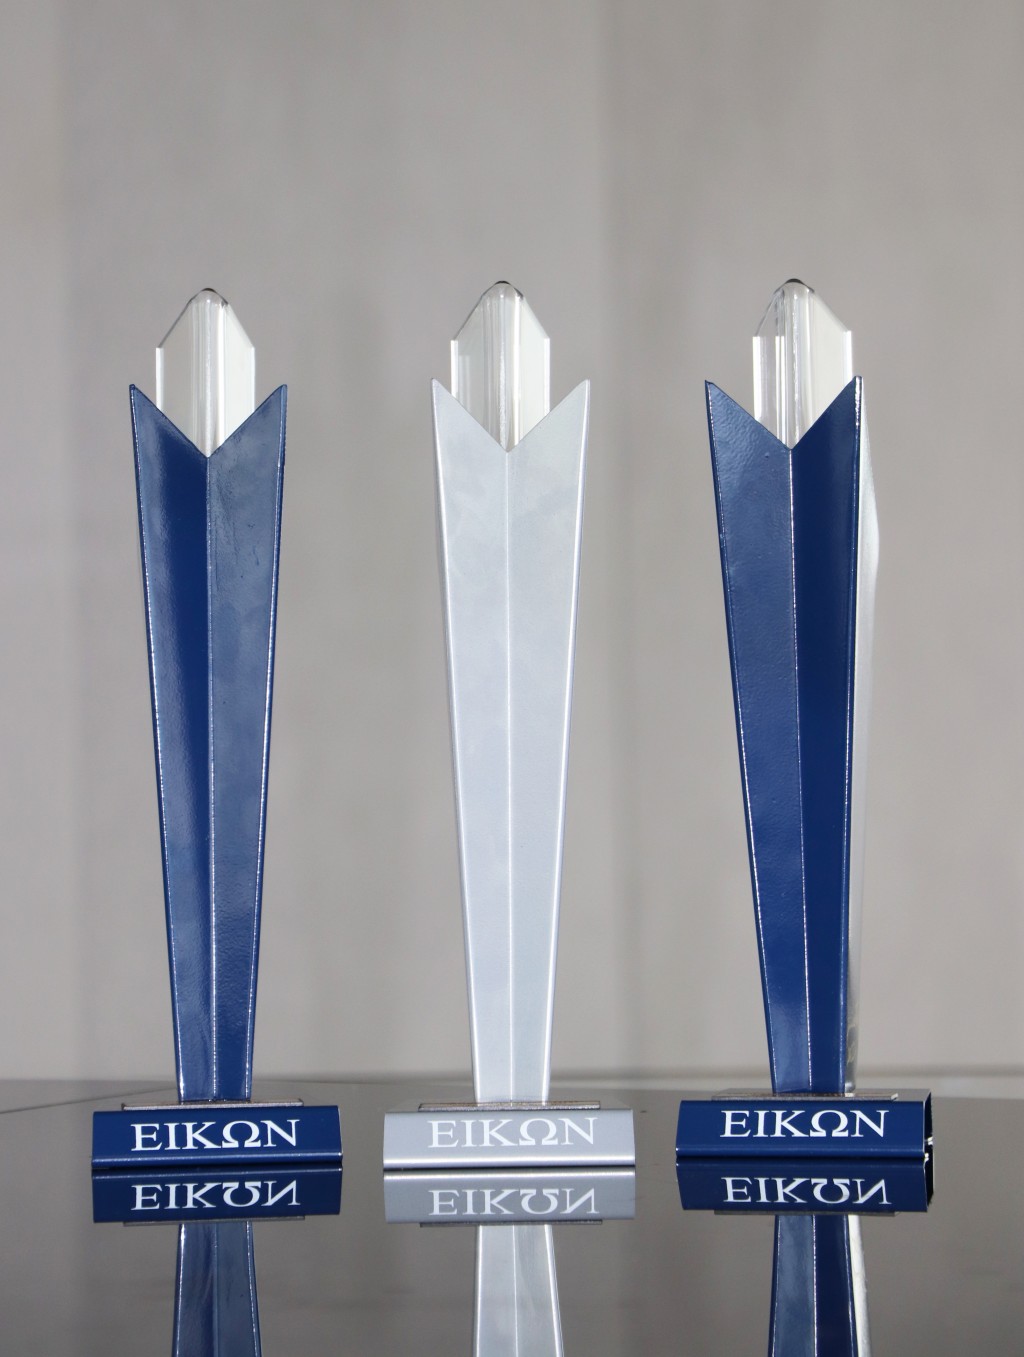 Banco Macro fue reconocido en los Premios Eikon 2022